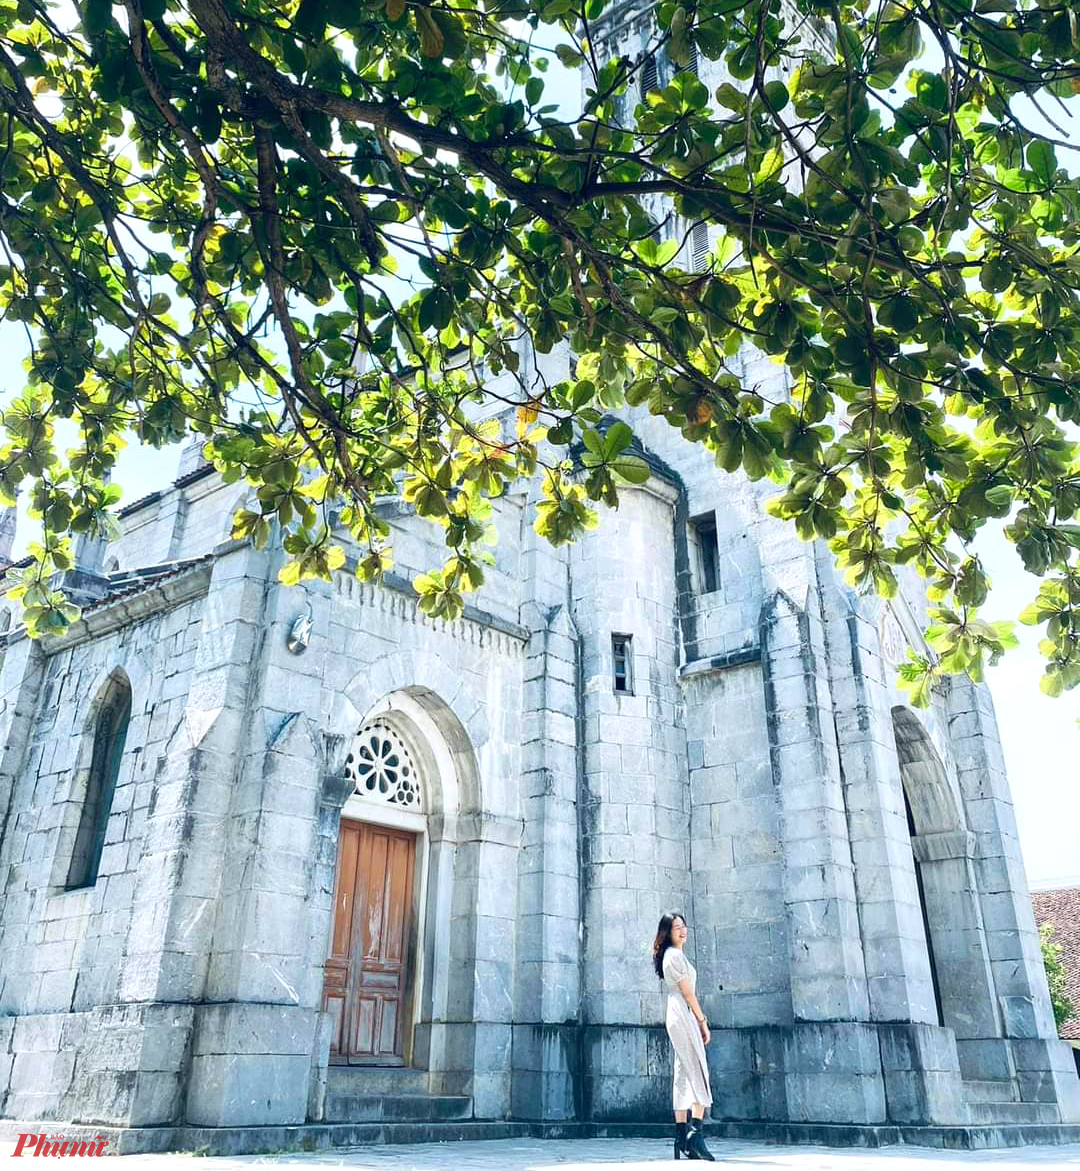 Được xem là ngôi thánh đường bằng đá độc nhất xứ Nghệ, nhà thờ đá Bảo Nham trở thành điểm tham quan, check-in của nhiều người dân khi có dịp ghé qua địa phương này.